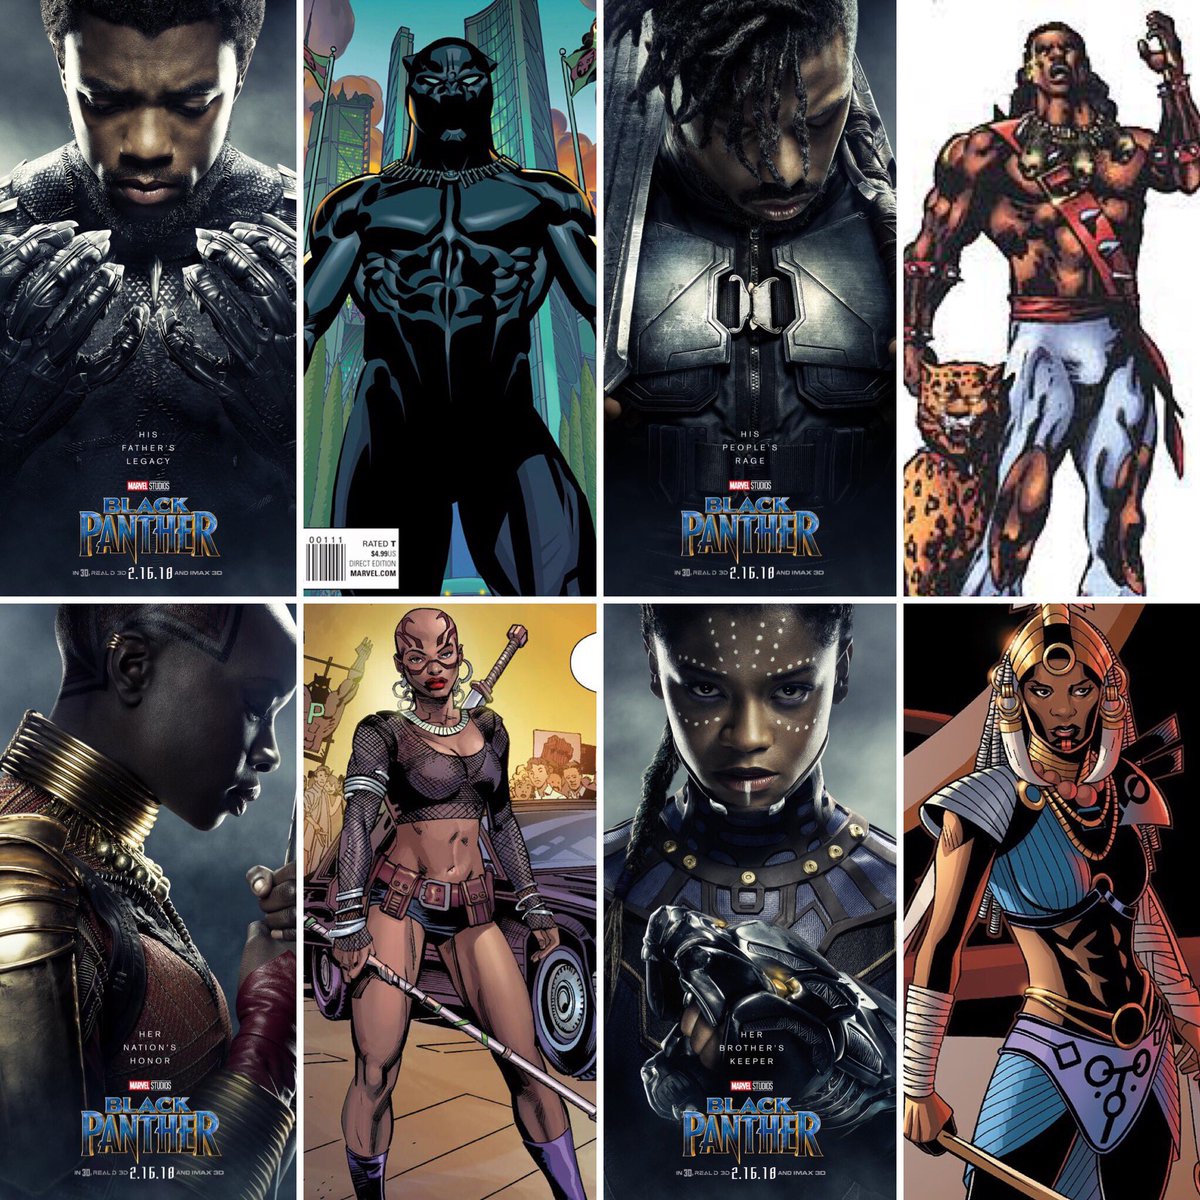 Marvelキャラクター紹介bot בטוויטר Wakanda Forever 本日はブラックパンサー公開日 Marvelキャラ紹介botでは 映画 ブラックパンサー に登場するキャラクターの原作を紹介しています 原作と映画の違いを楽しんで見てください ブラックパンサー